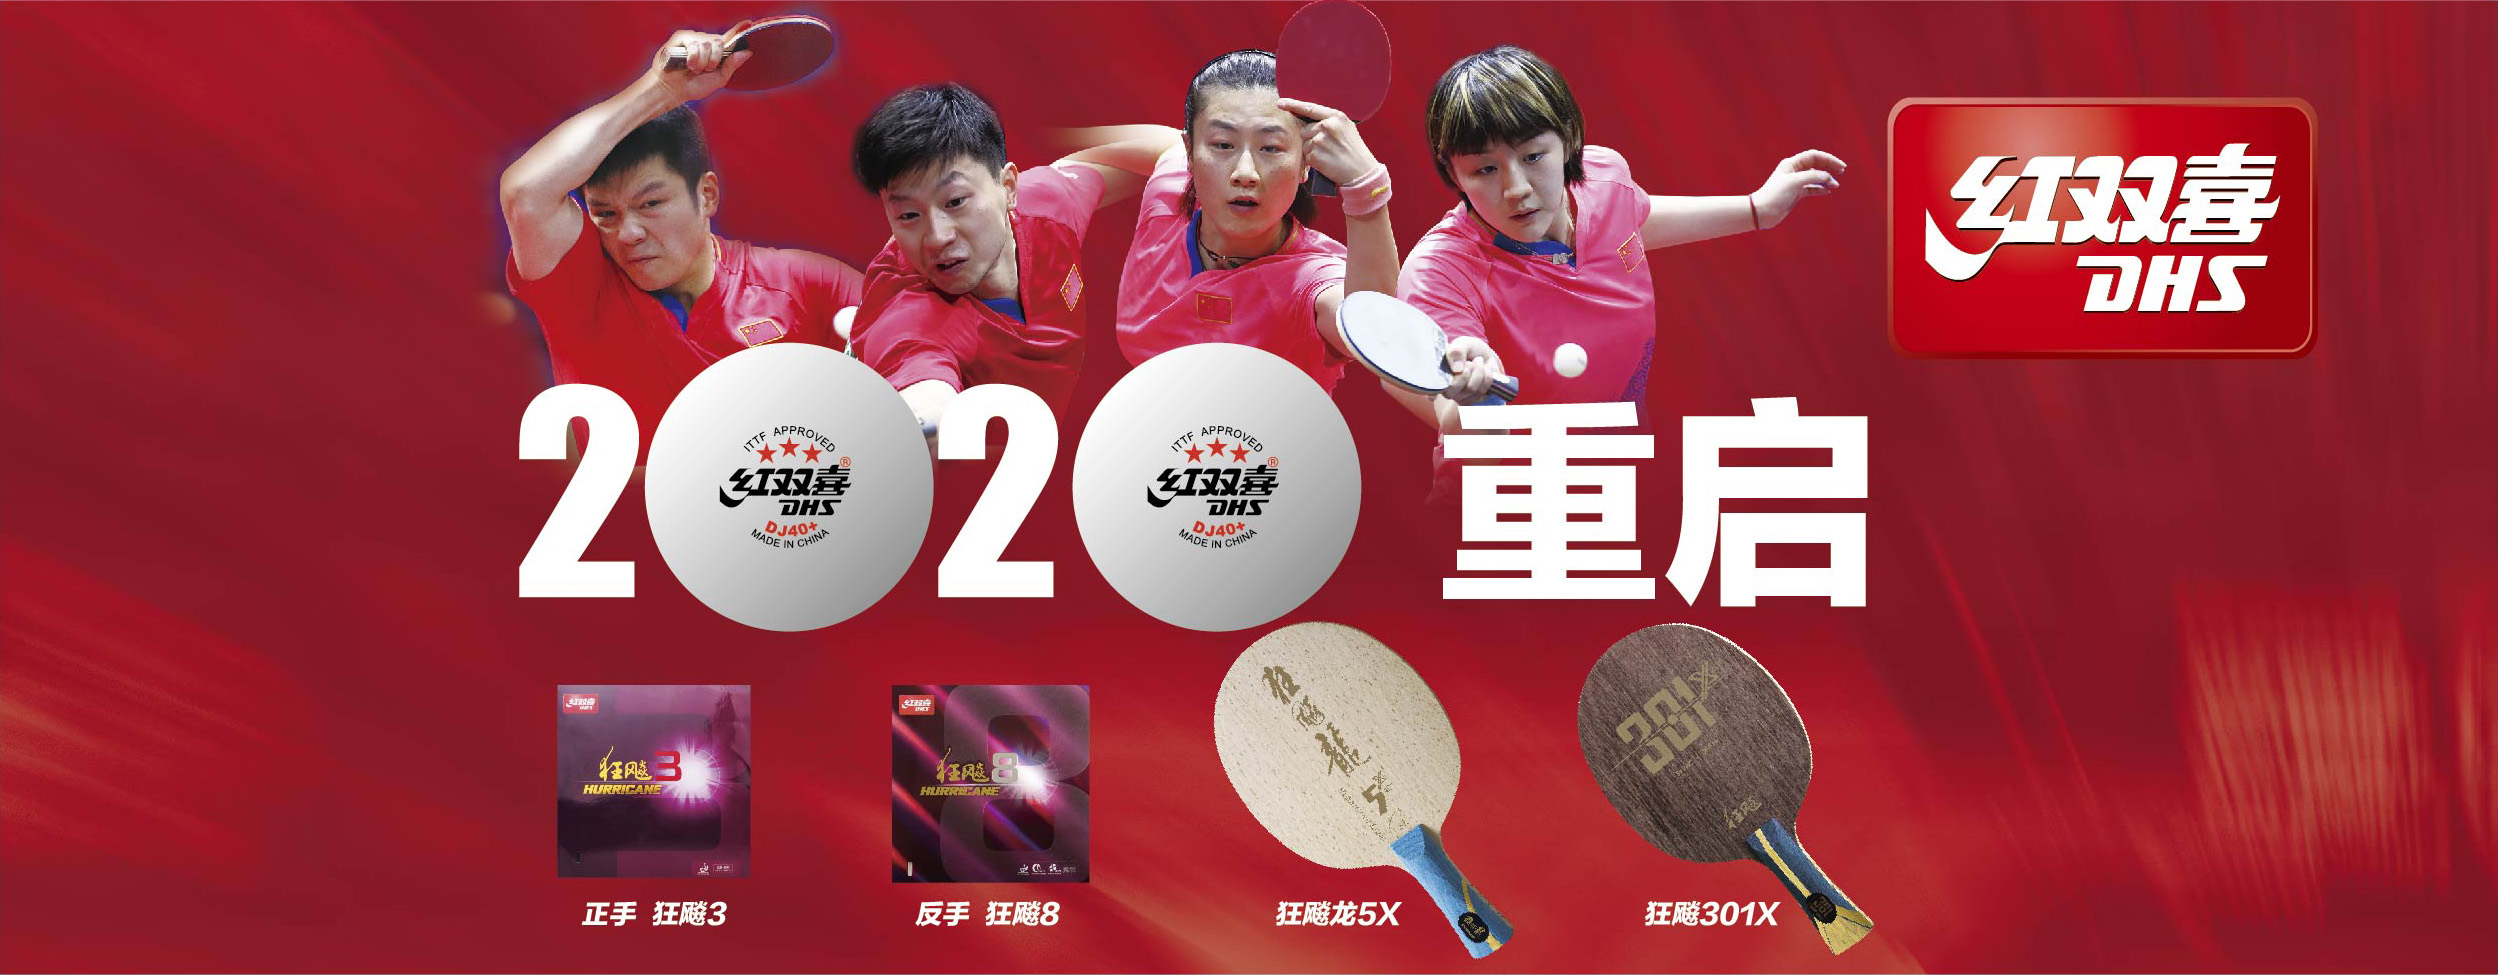 2019年全国乒乓球锦标赛成绩